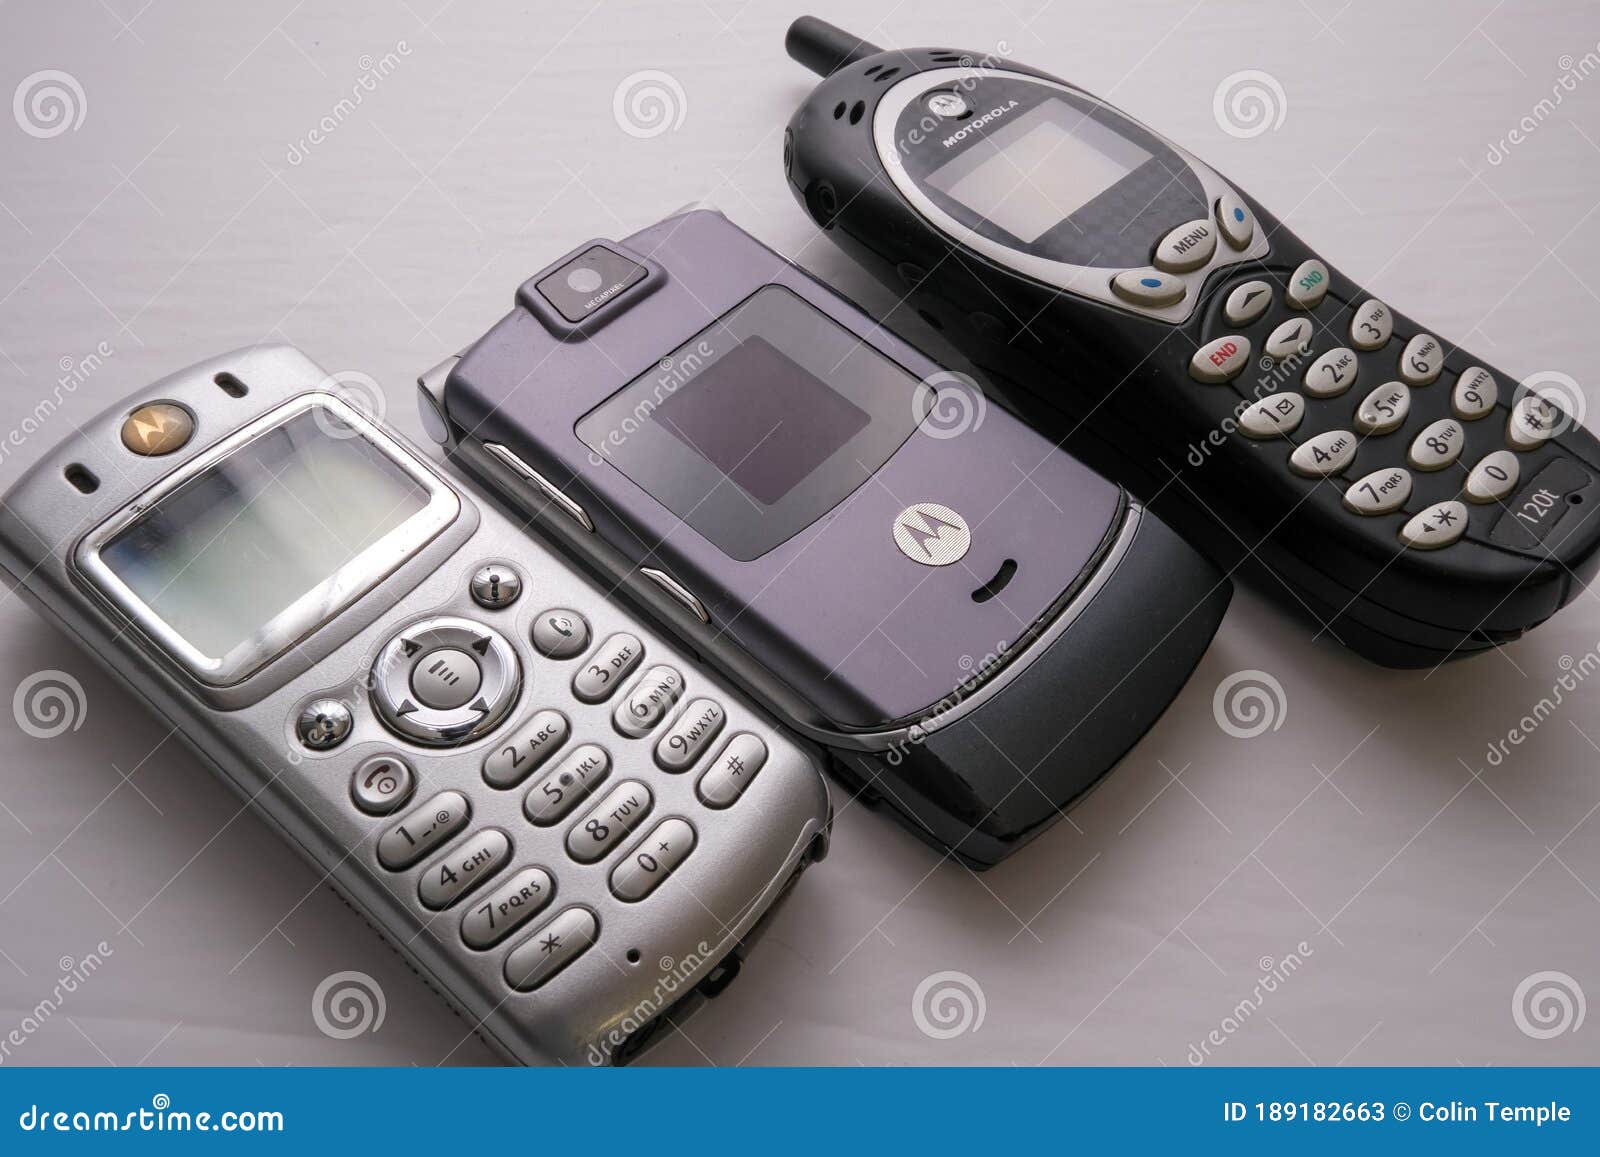 Teléfonos Celulares De Motorola De Principios De Los Años 2000